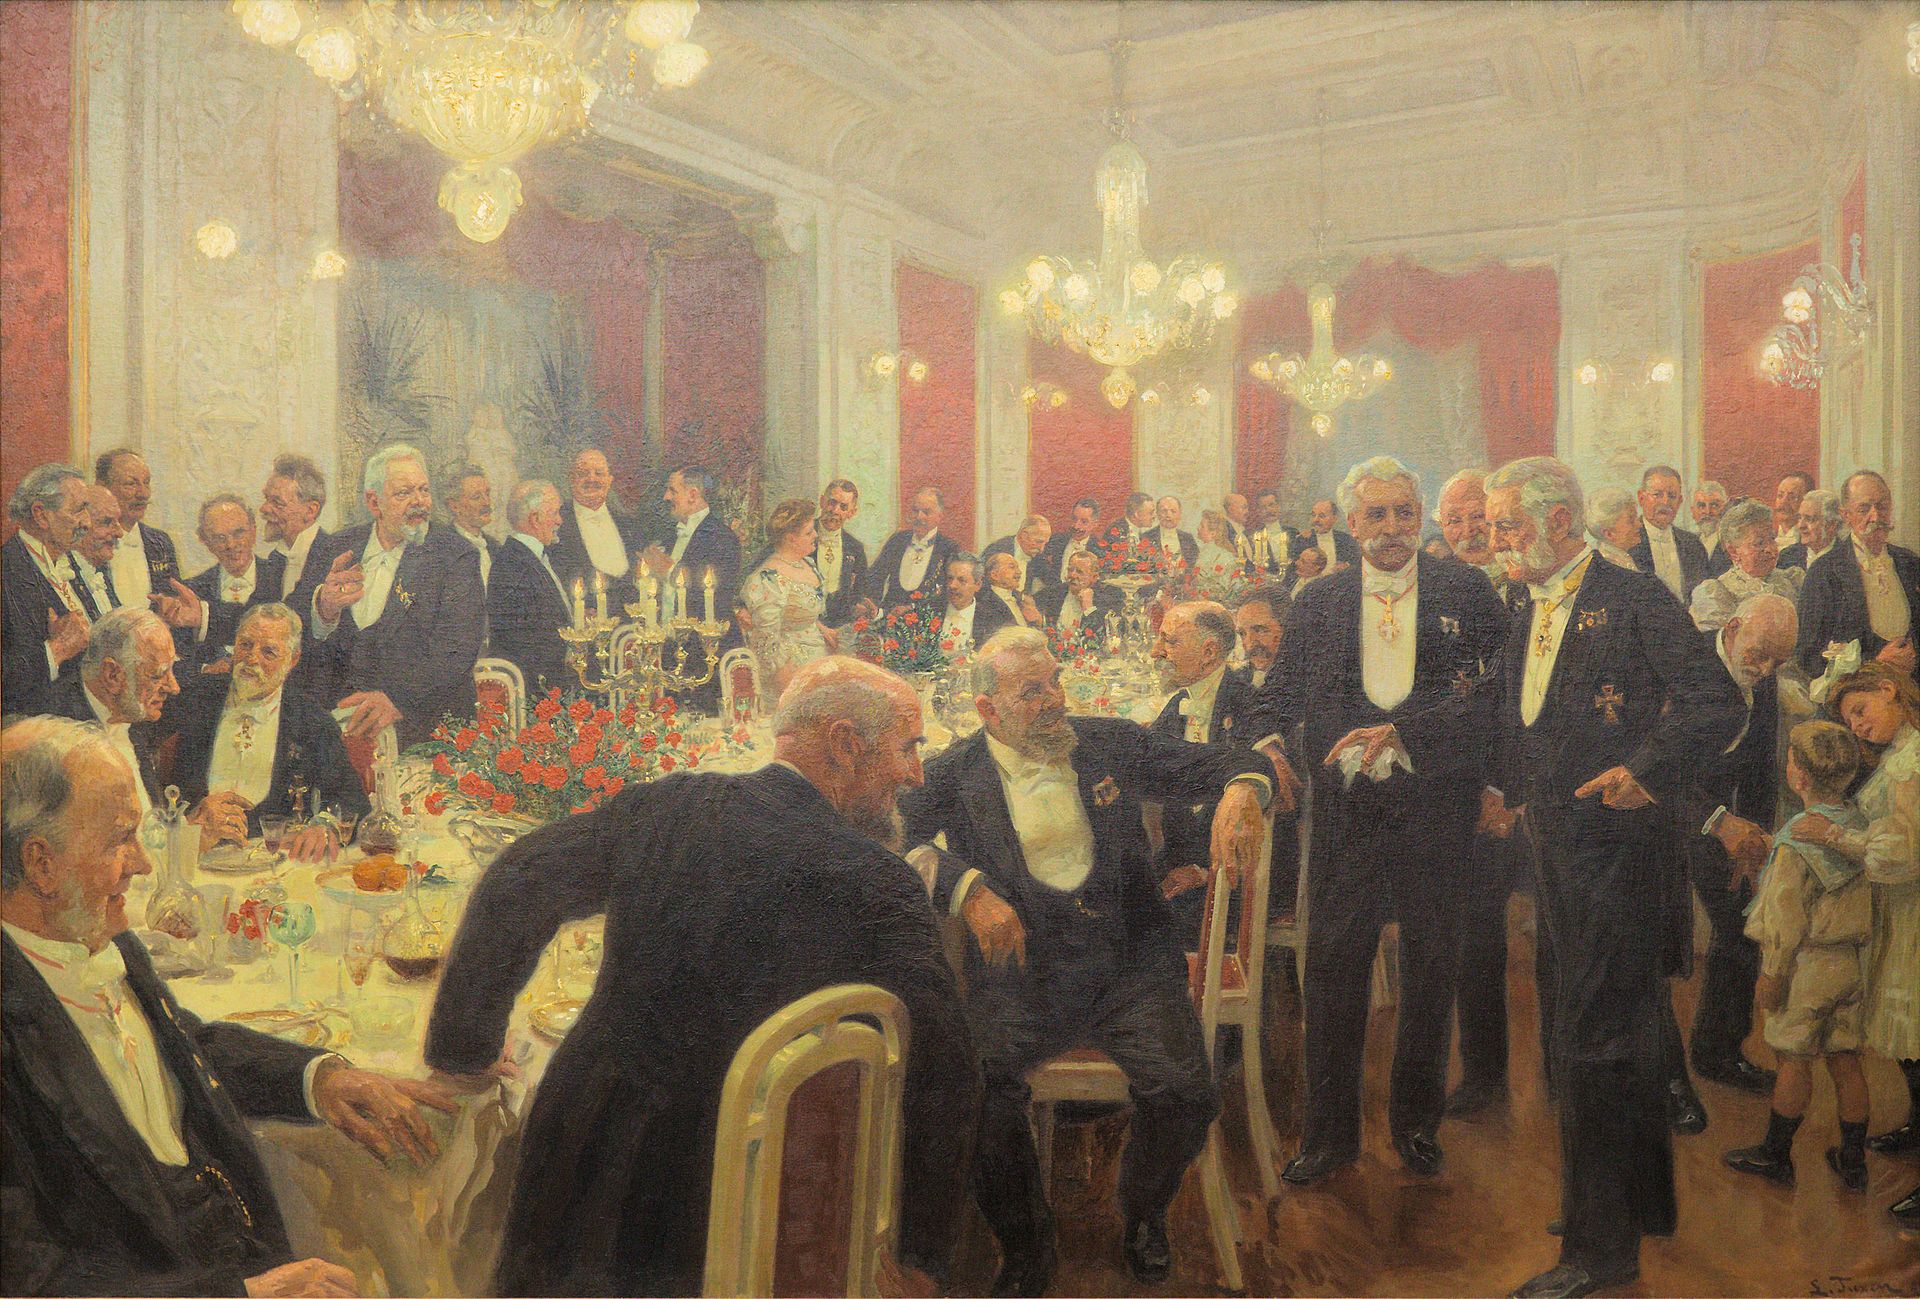 "Man rejser sig fra bordet" - Gruppeportræt malet af kunstneren Laurits Tuxen i 1906. Maleriet viser et stort aftenselskab med adskillige af samtidens store profiler. På stolen midtfor ses selveste Holger Petersen.